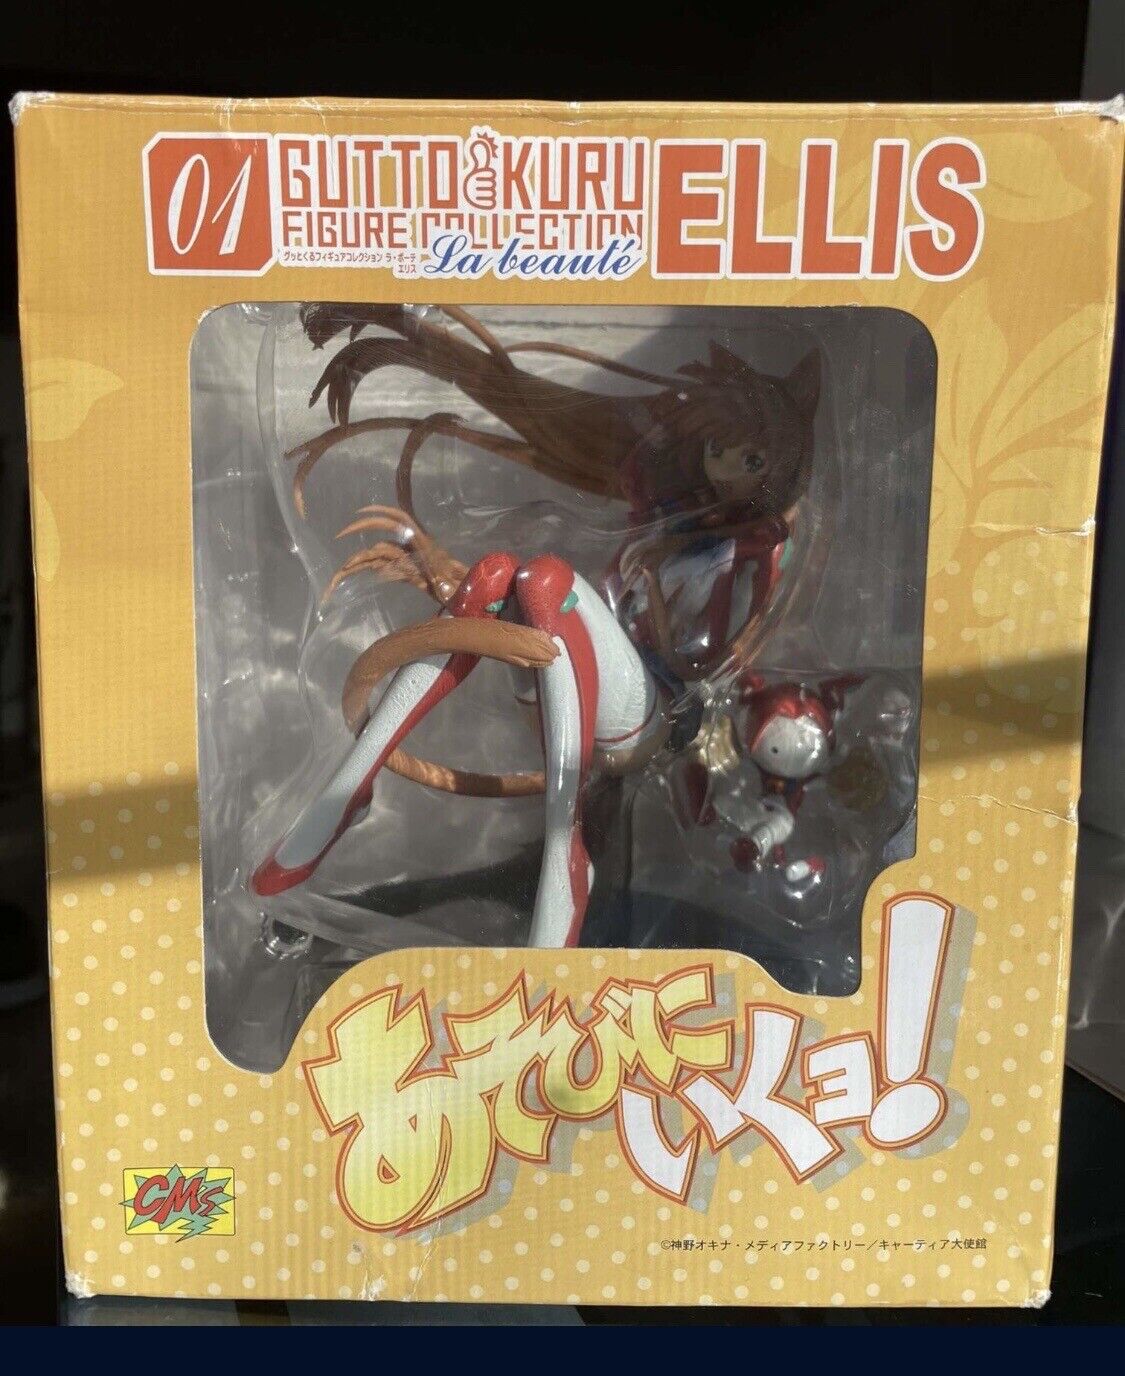 Gutto Kuru Figure Collection I La beauté Ellis